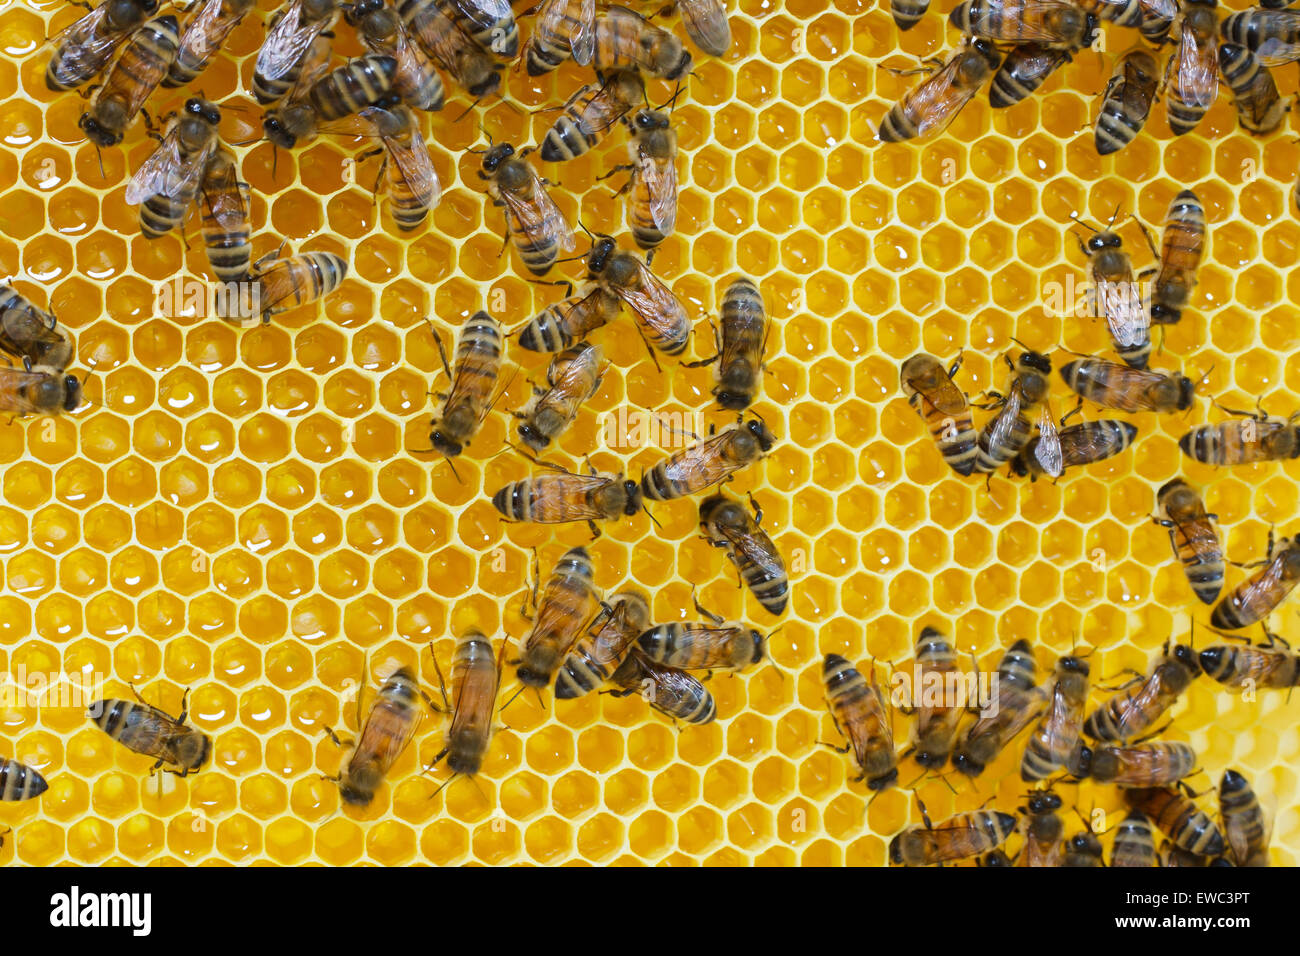 Les abeilles travaillent sur des cellules de miel Banque D'Images